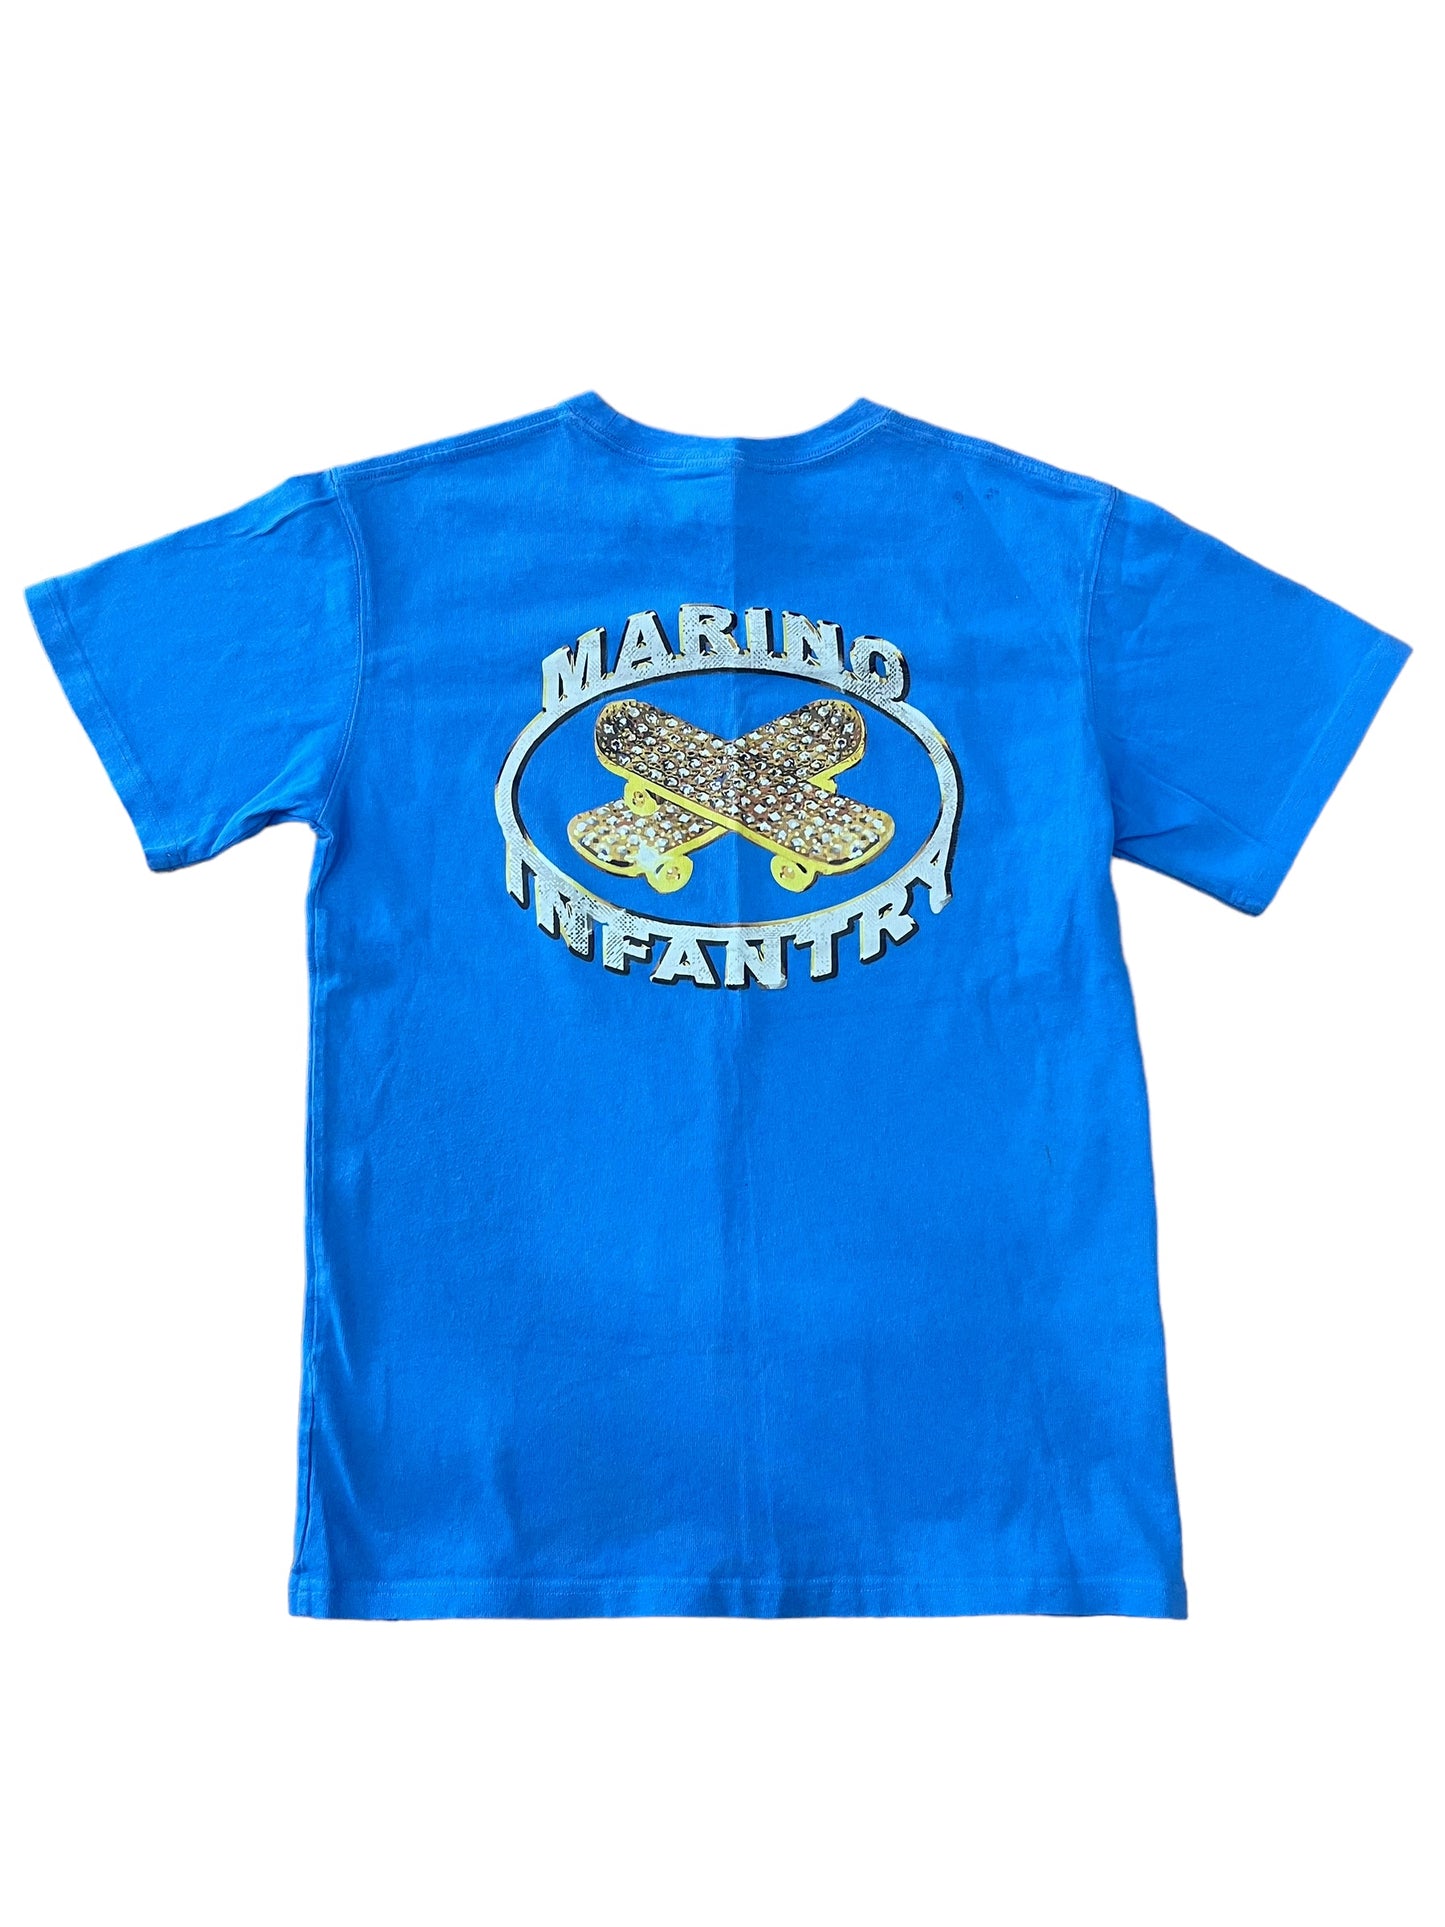 Marino Infantry Shirt Blue Size 4